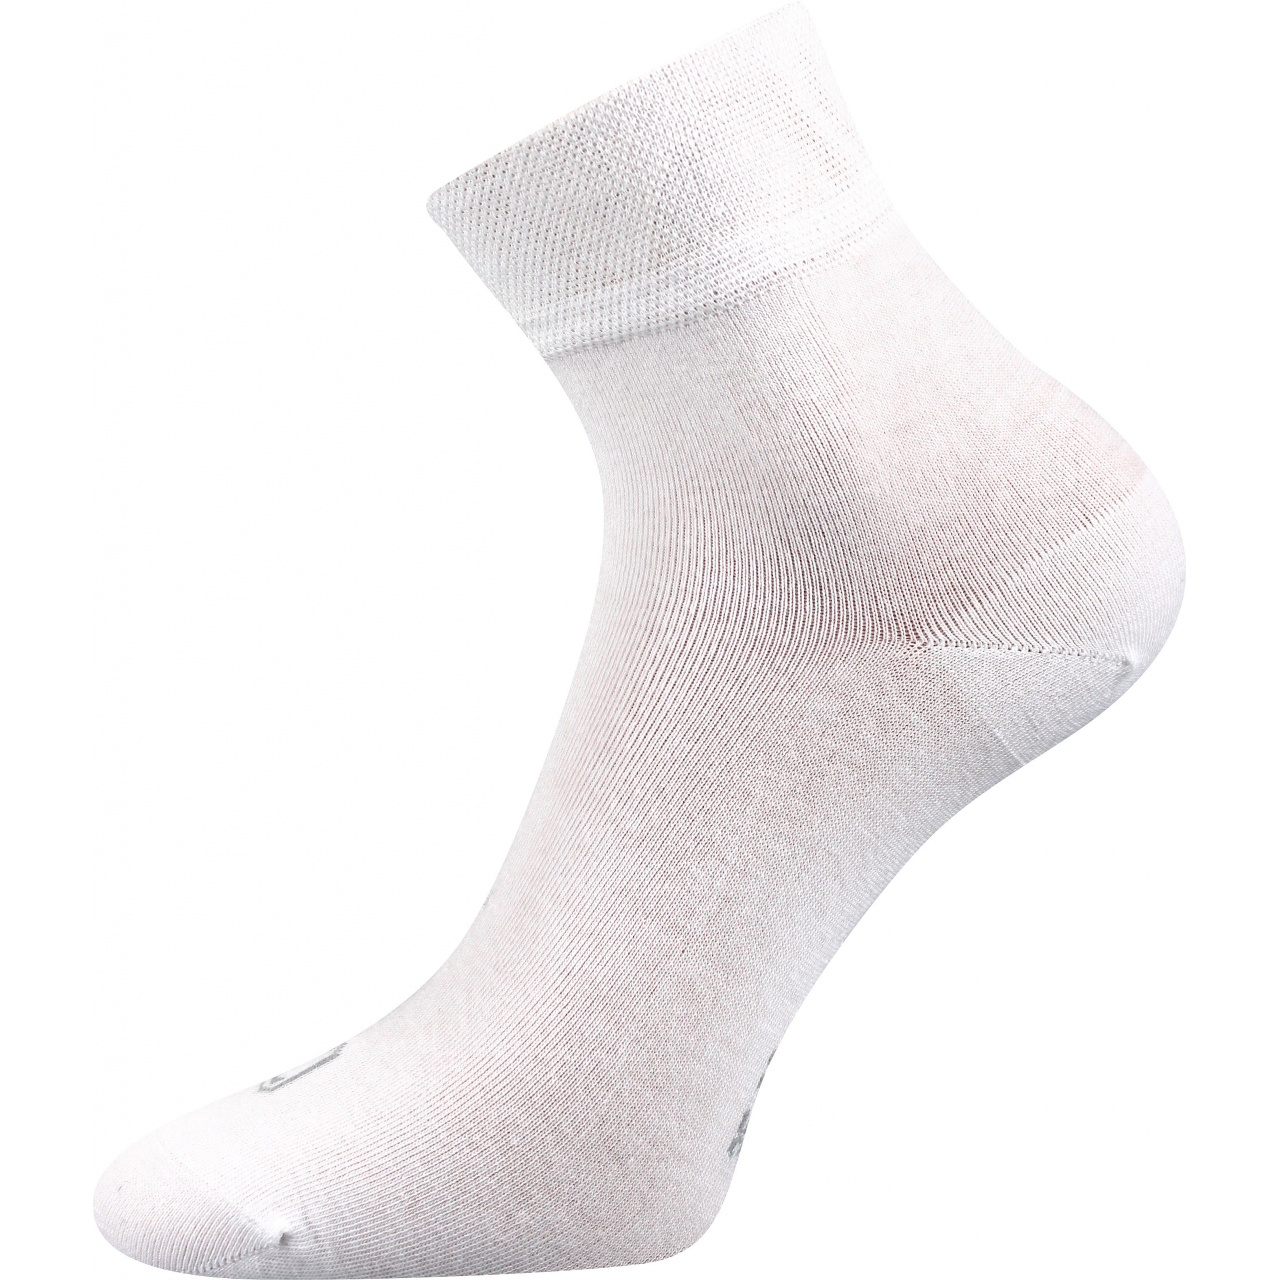 Ponožky unisex klasické Lonka Emi - bílé, 43-46